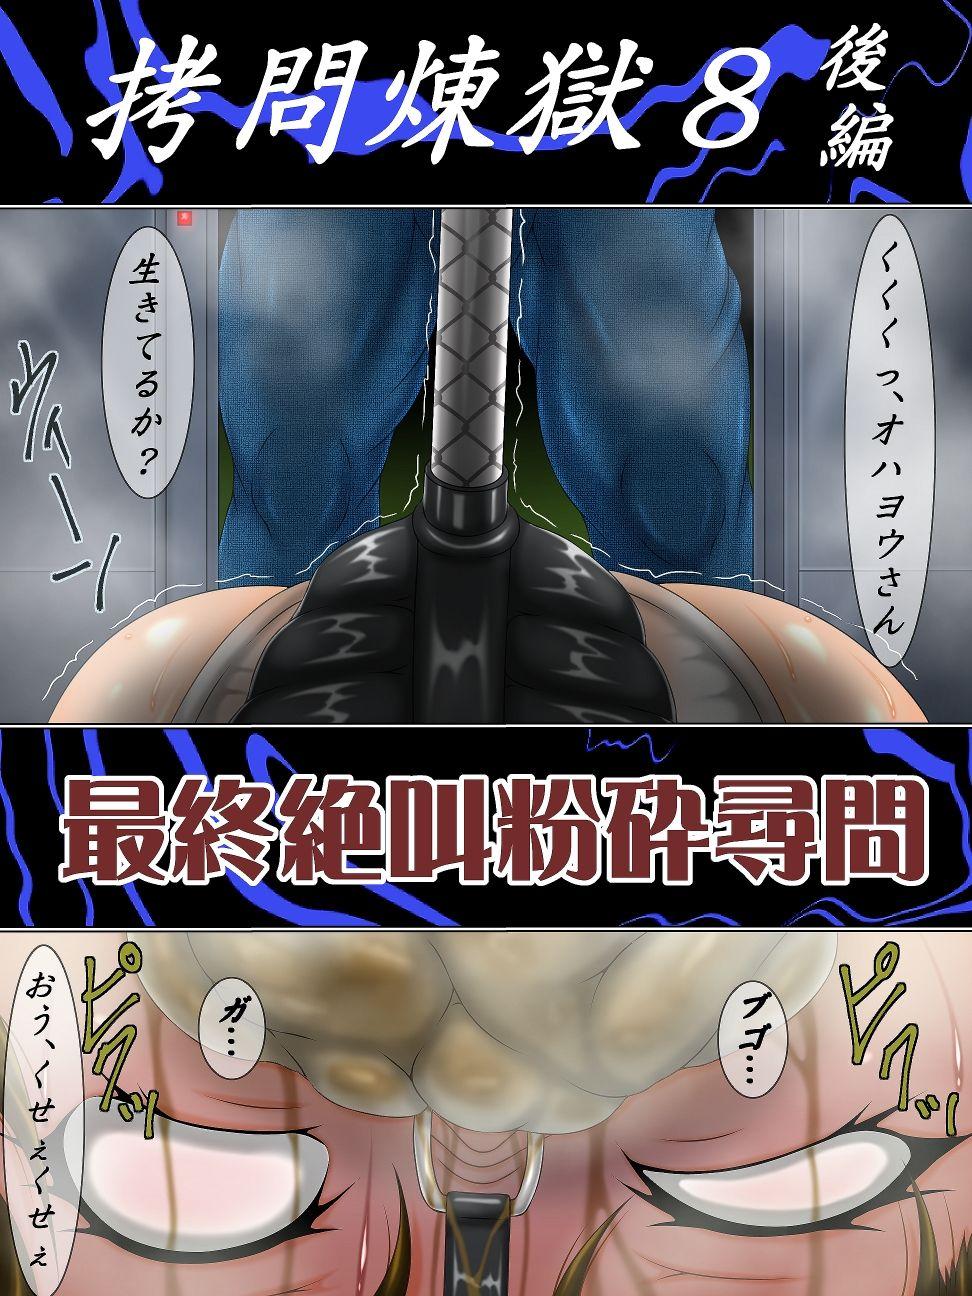 Bang Bros Gōmon rengoku 8 kōhen saishū zekkyō funsai jinmon - Final fantasy vii Monster Dick - Page 2